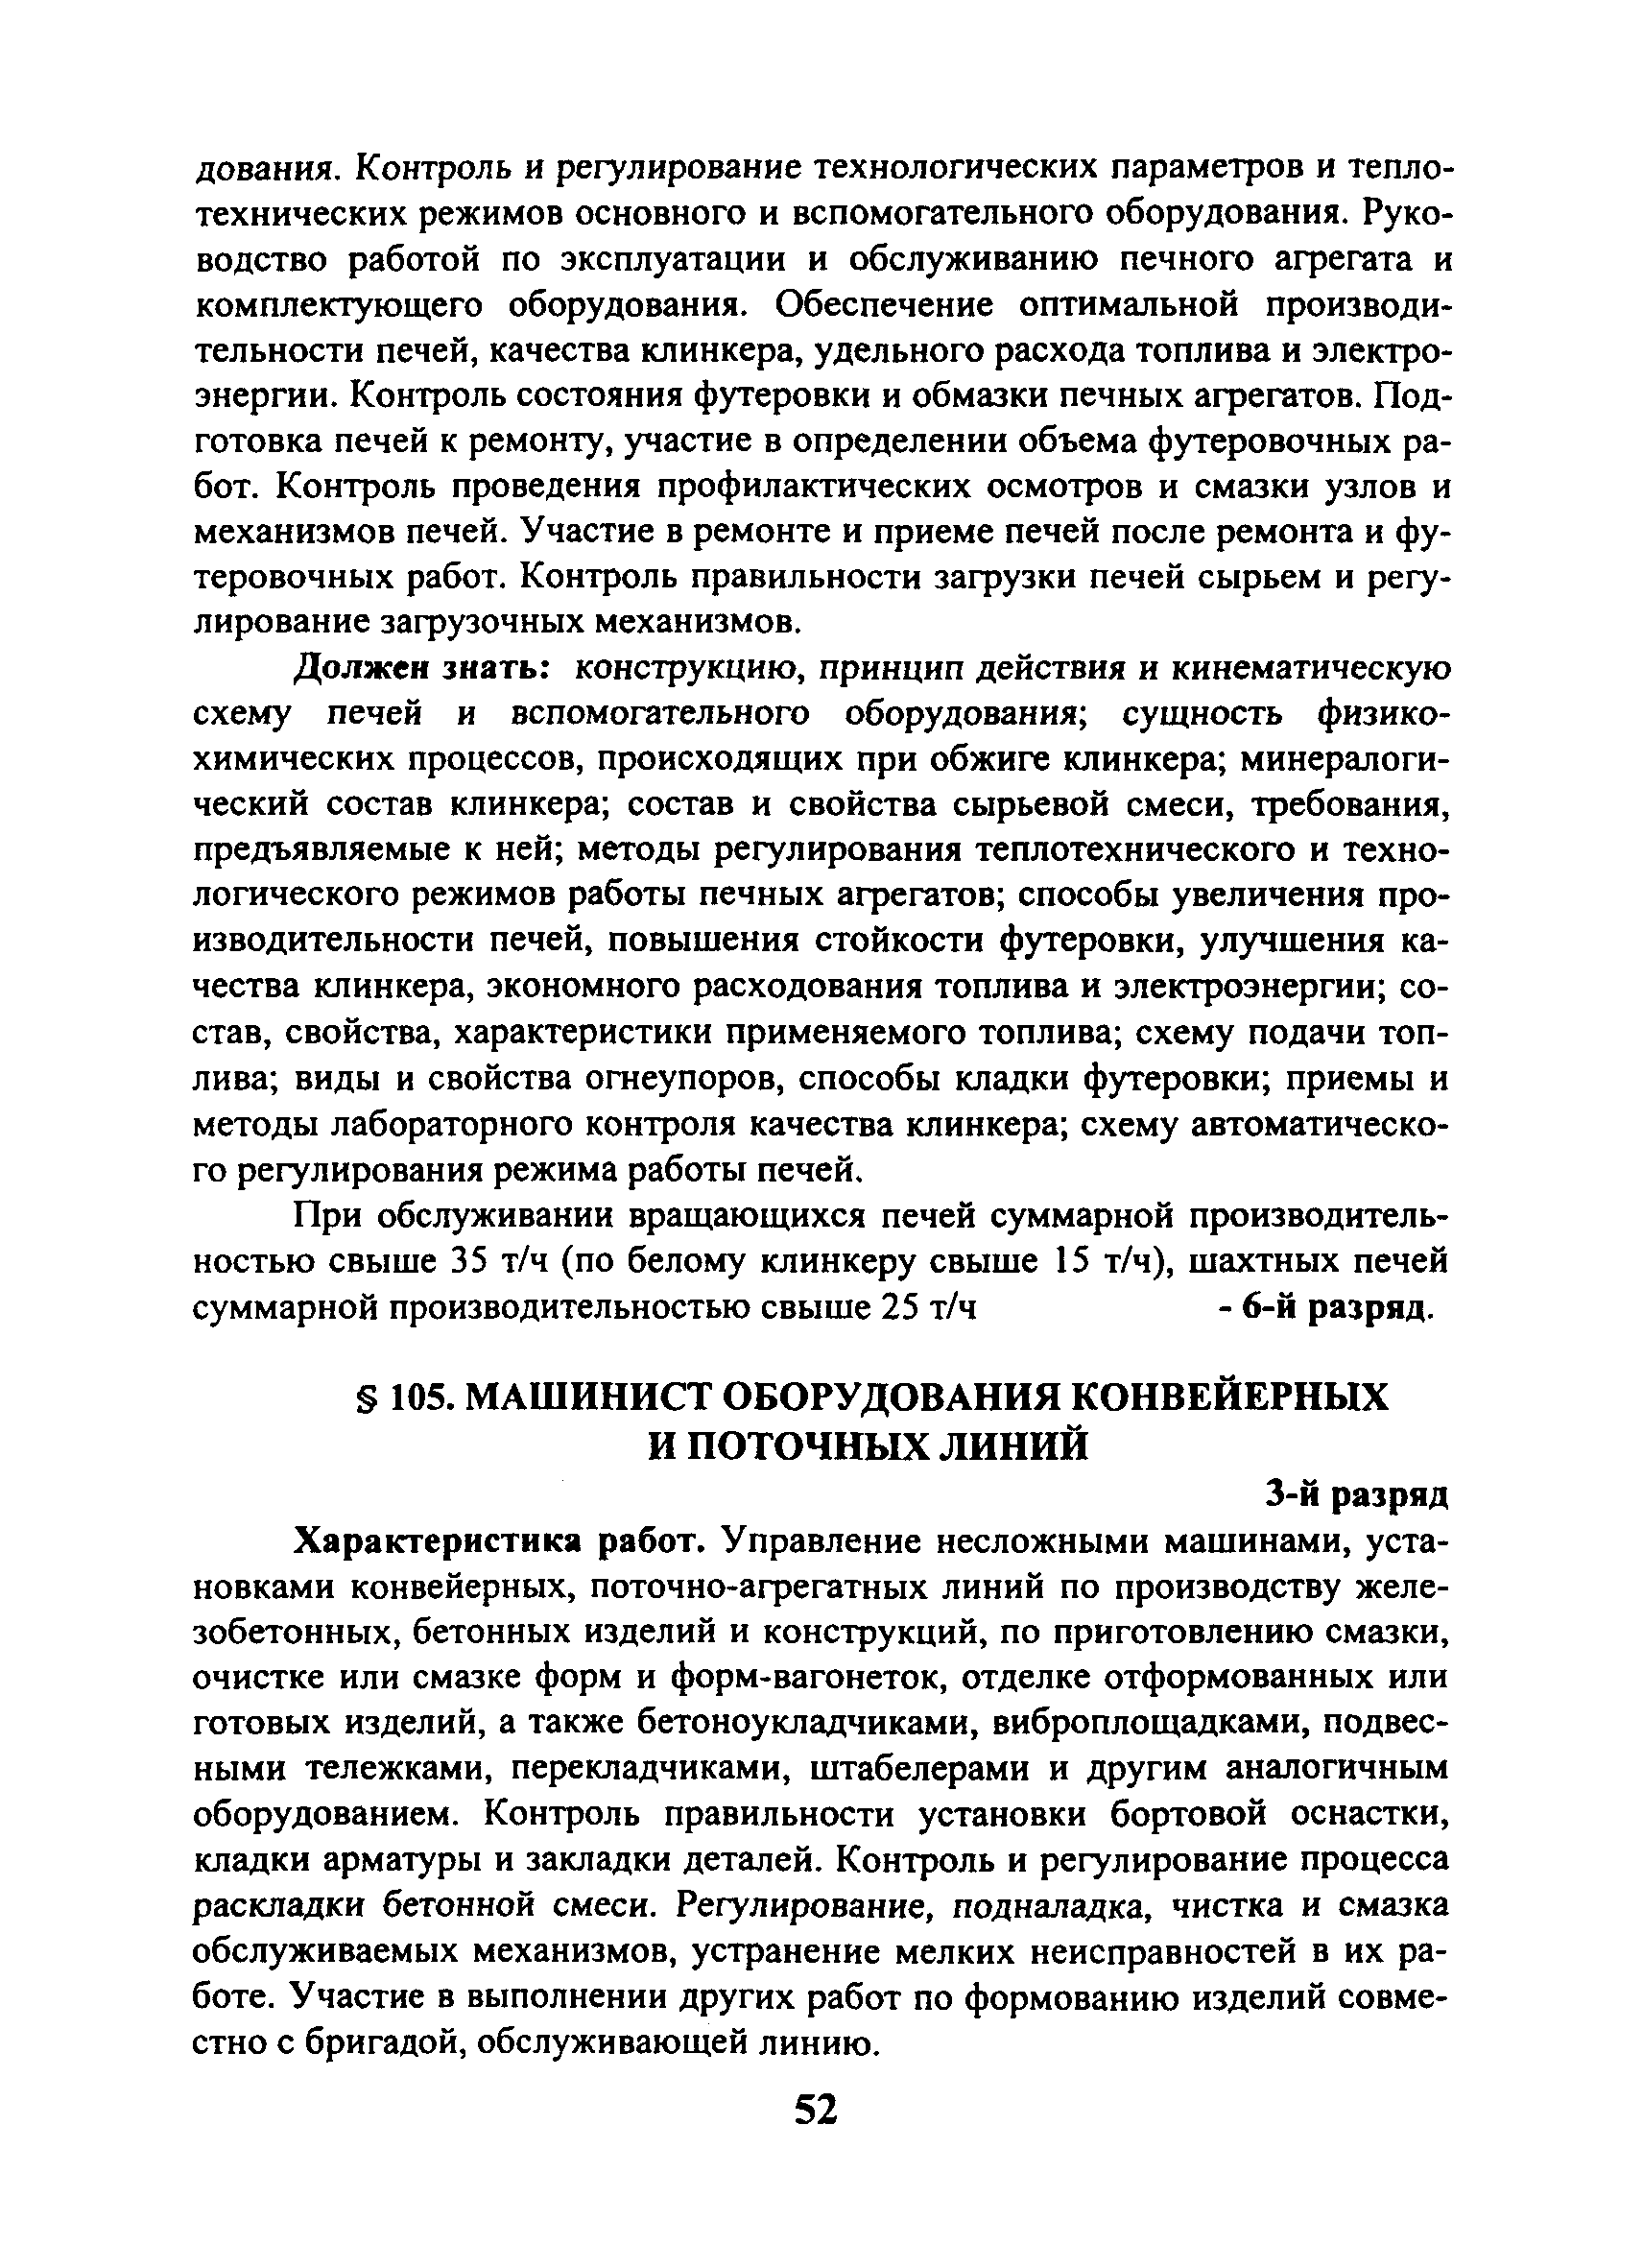 ЕТКС Выпуск 40